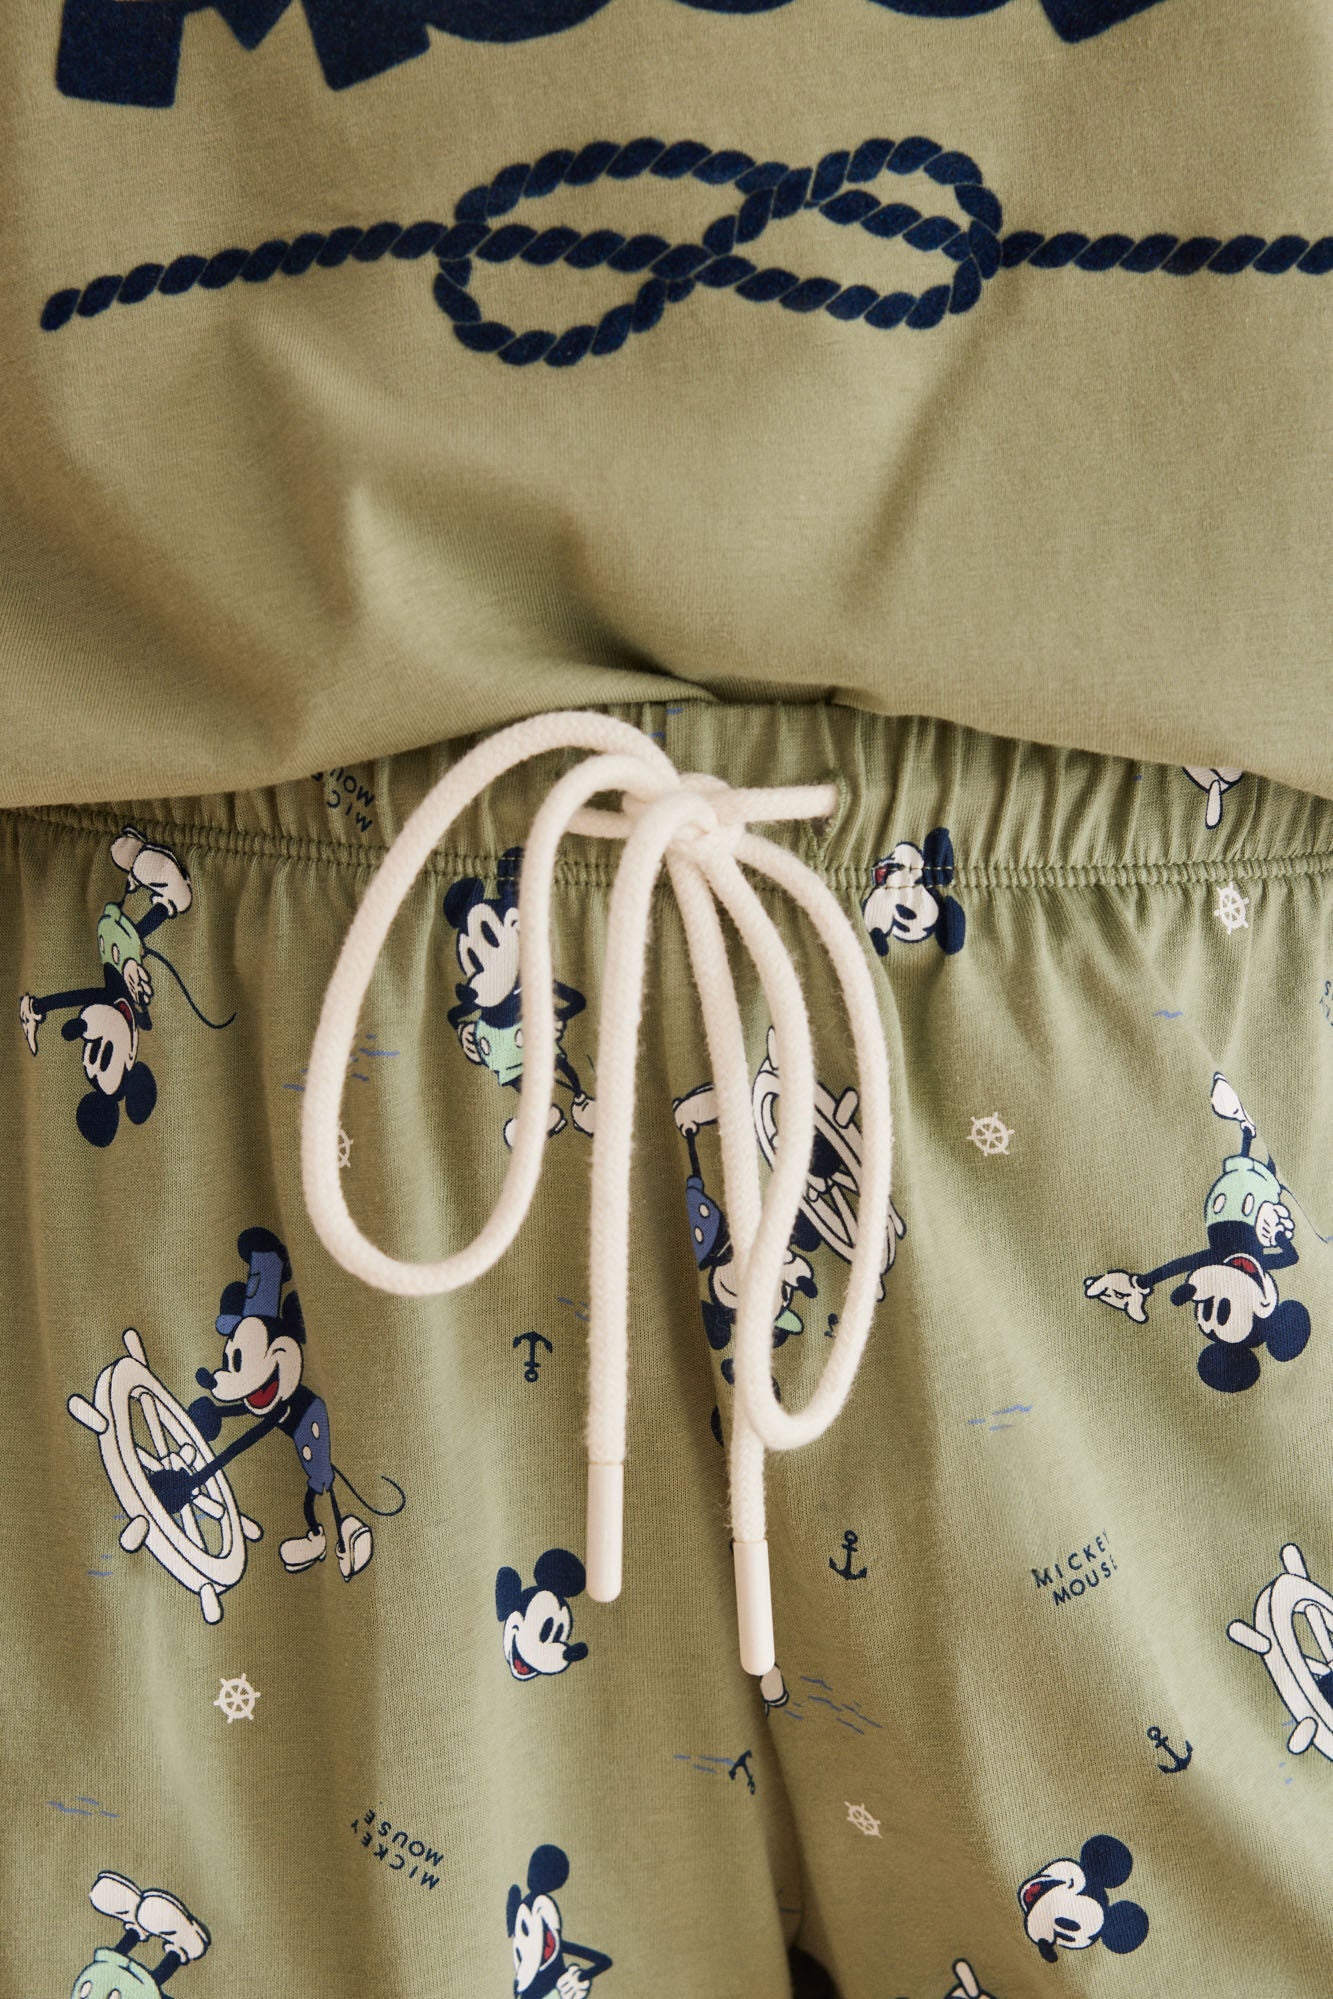 Mickey Mouse pajamas